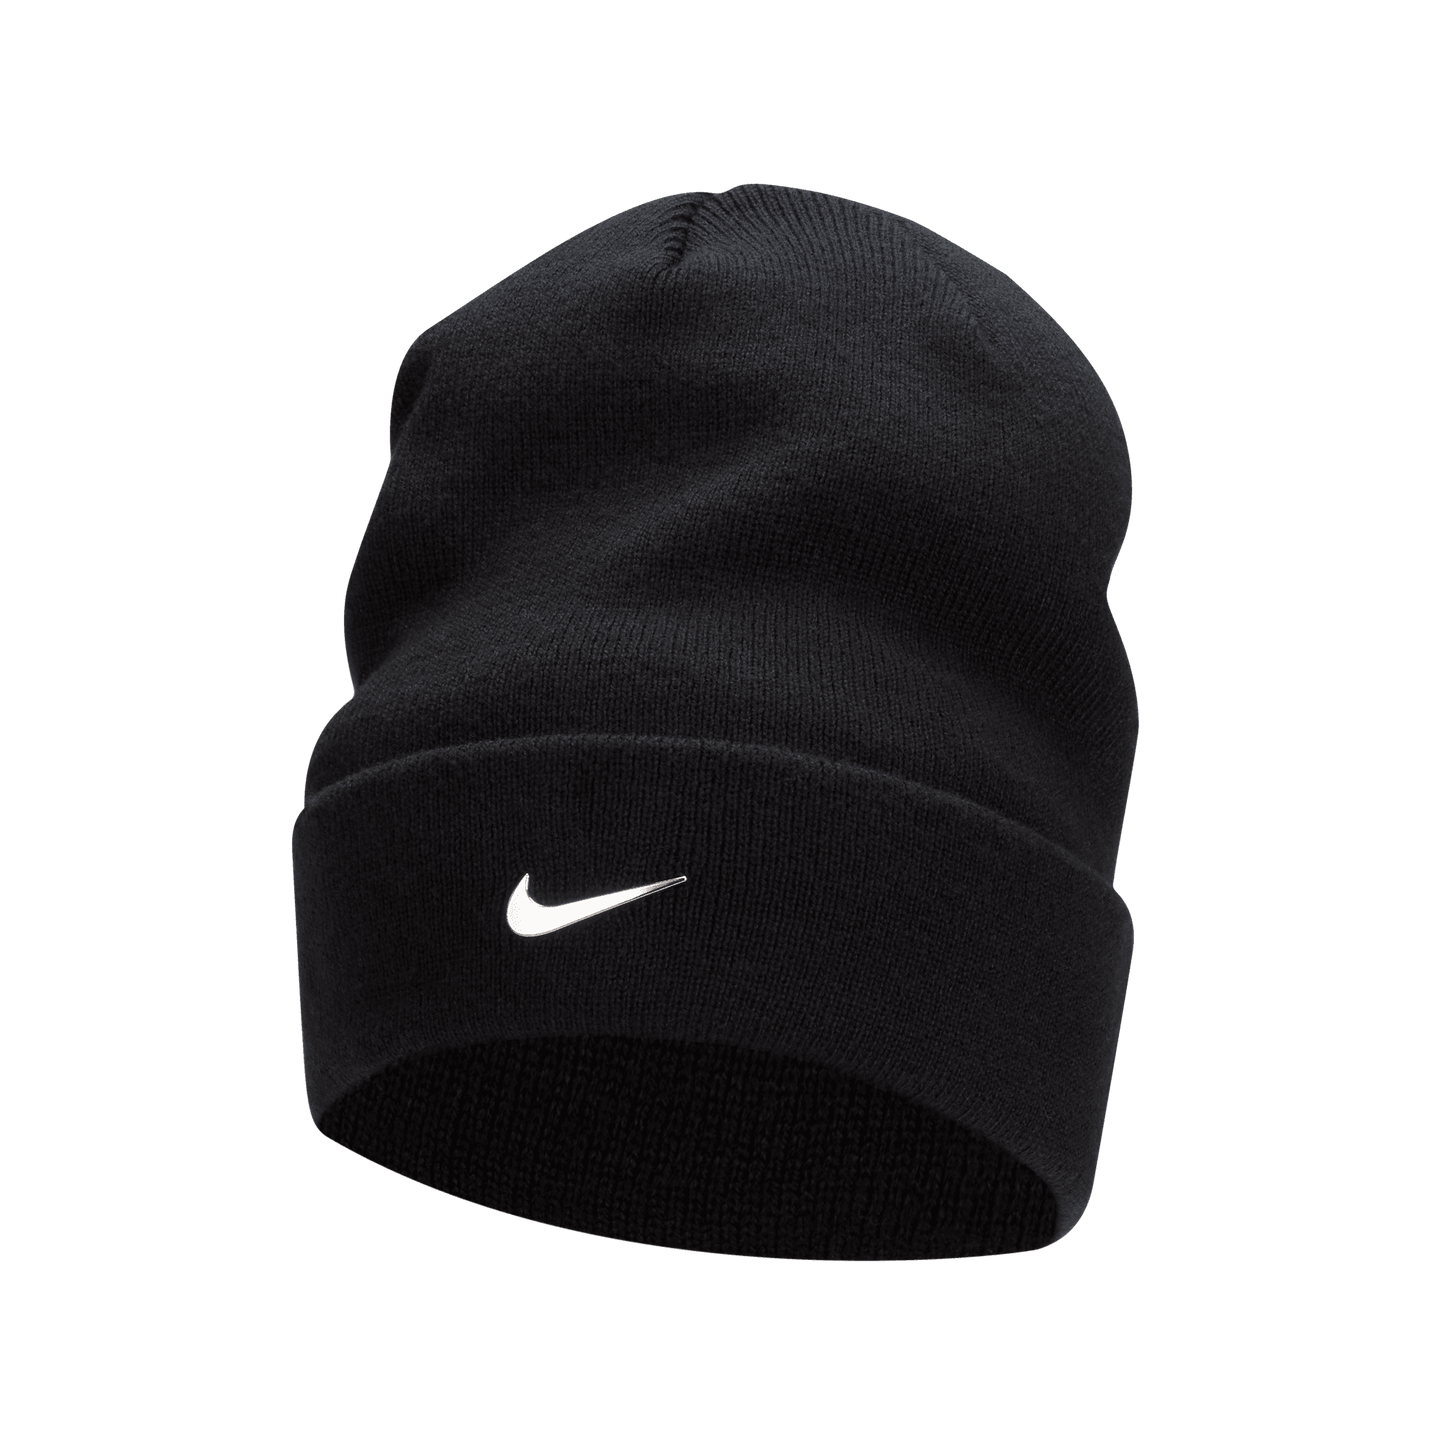 Nike Golf Peak Beanie Hat With Swoosh FB6527 Black 010 OSFA 